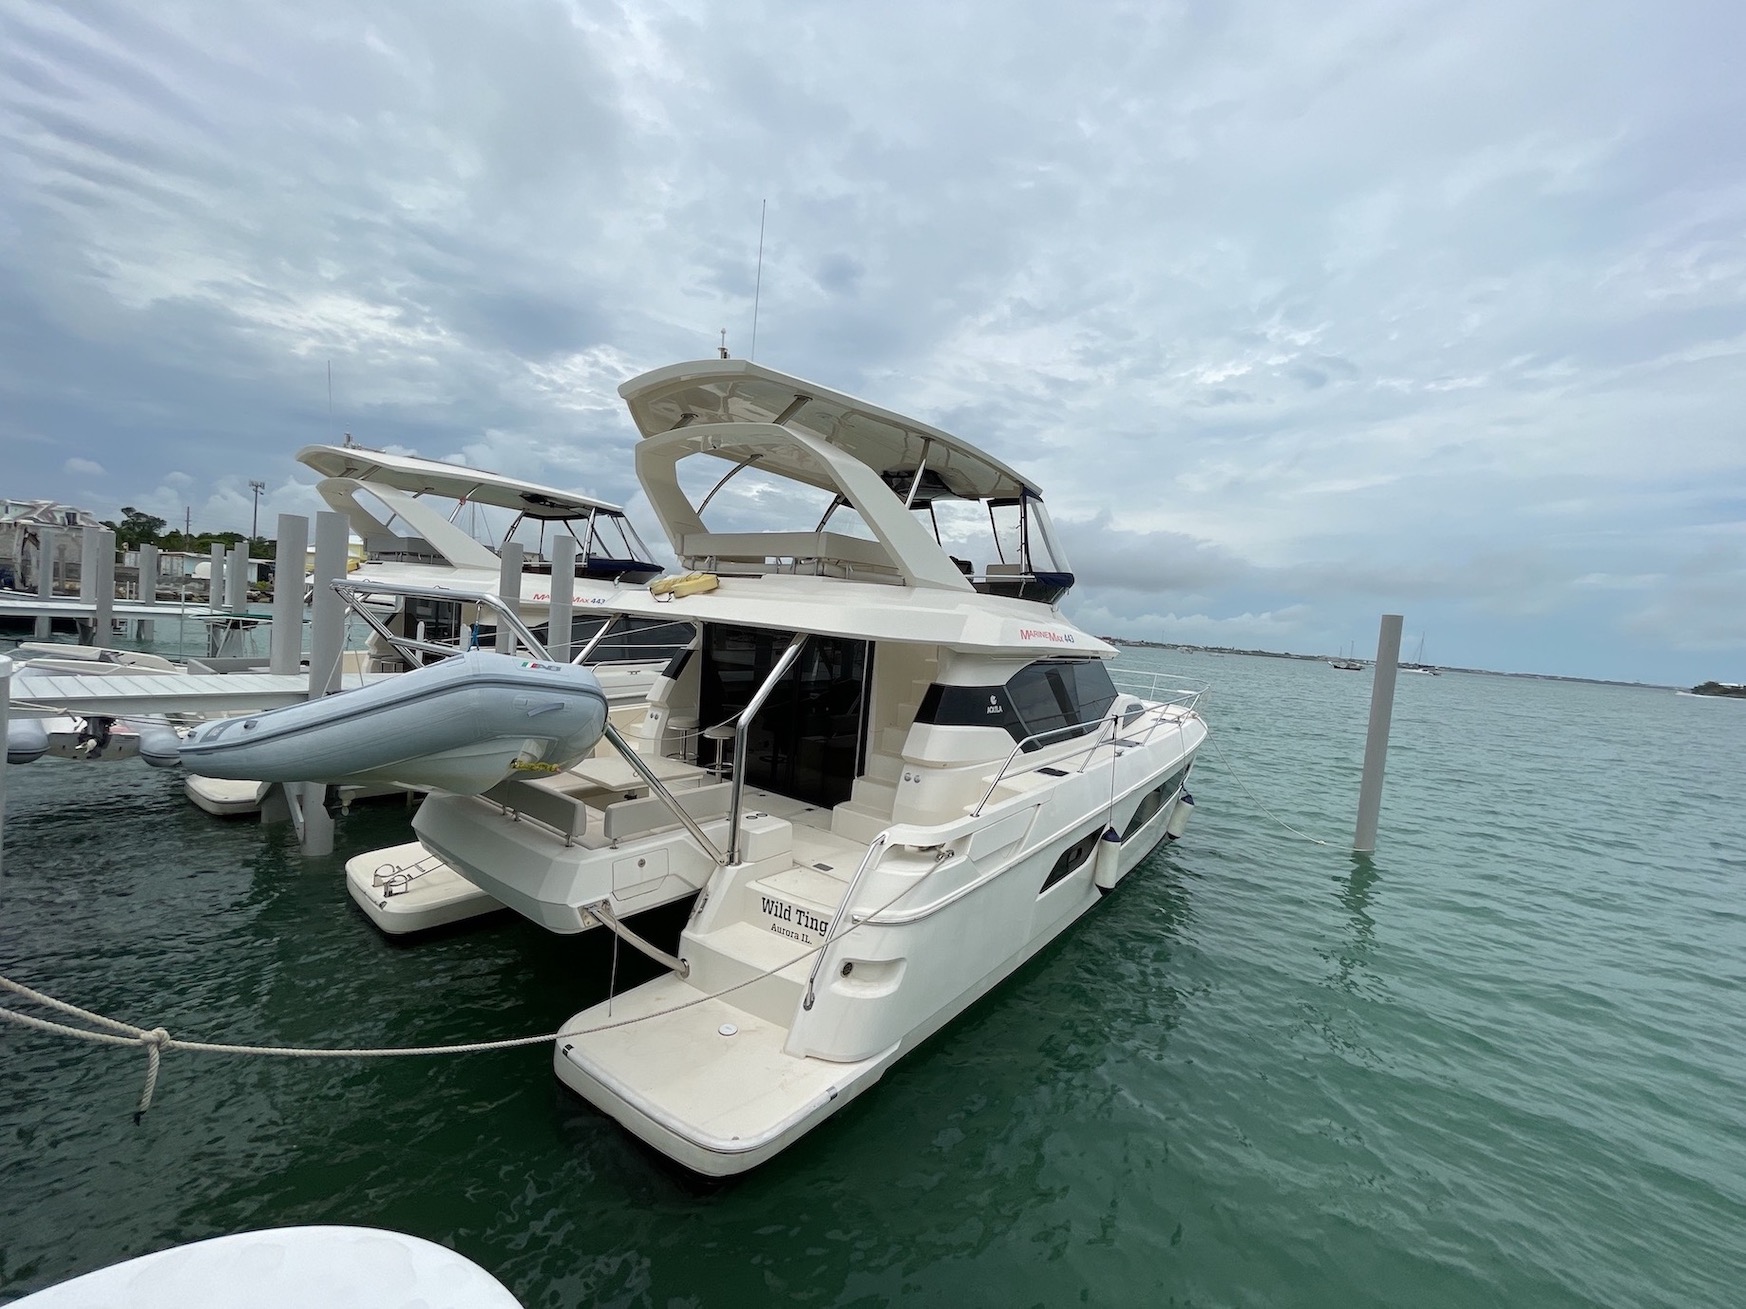 Aquila 44 - Motor Boat Charter Bahamas & Boat hire in Bahamas Abaco Islands Marsh Harbour Conch Inn Marina 1